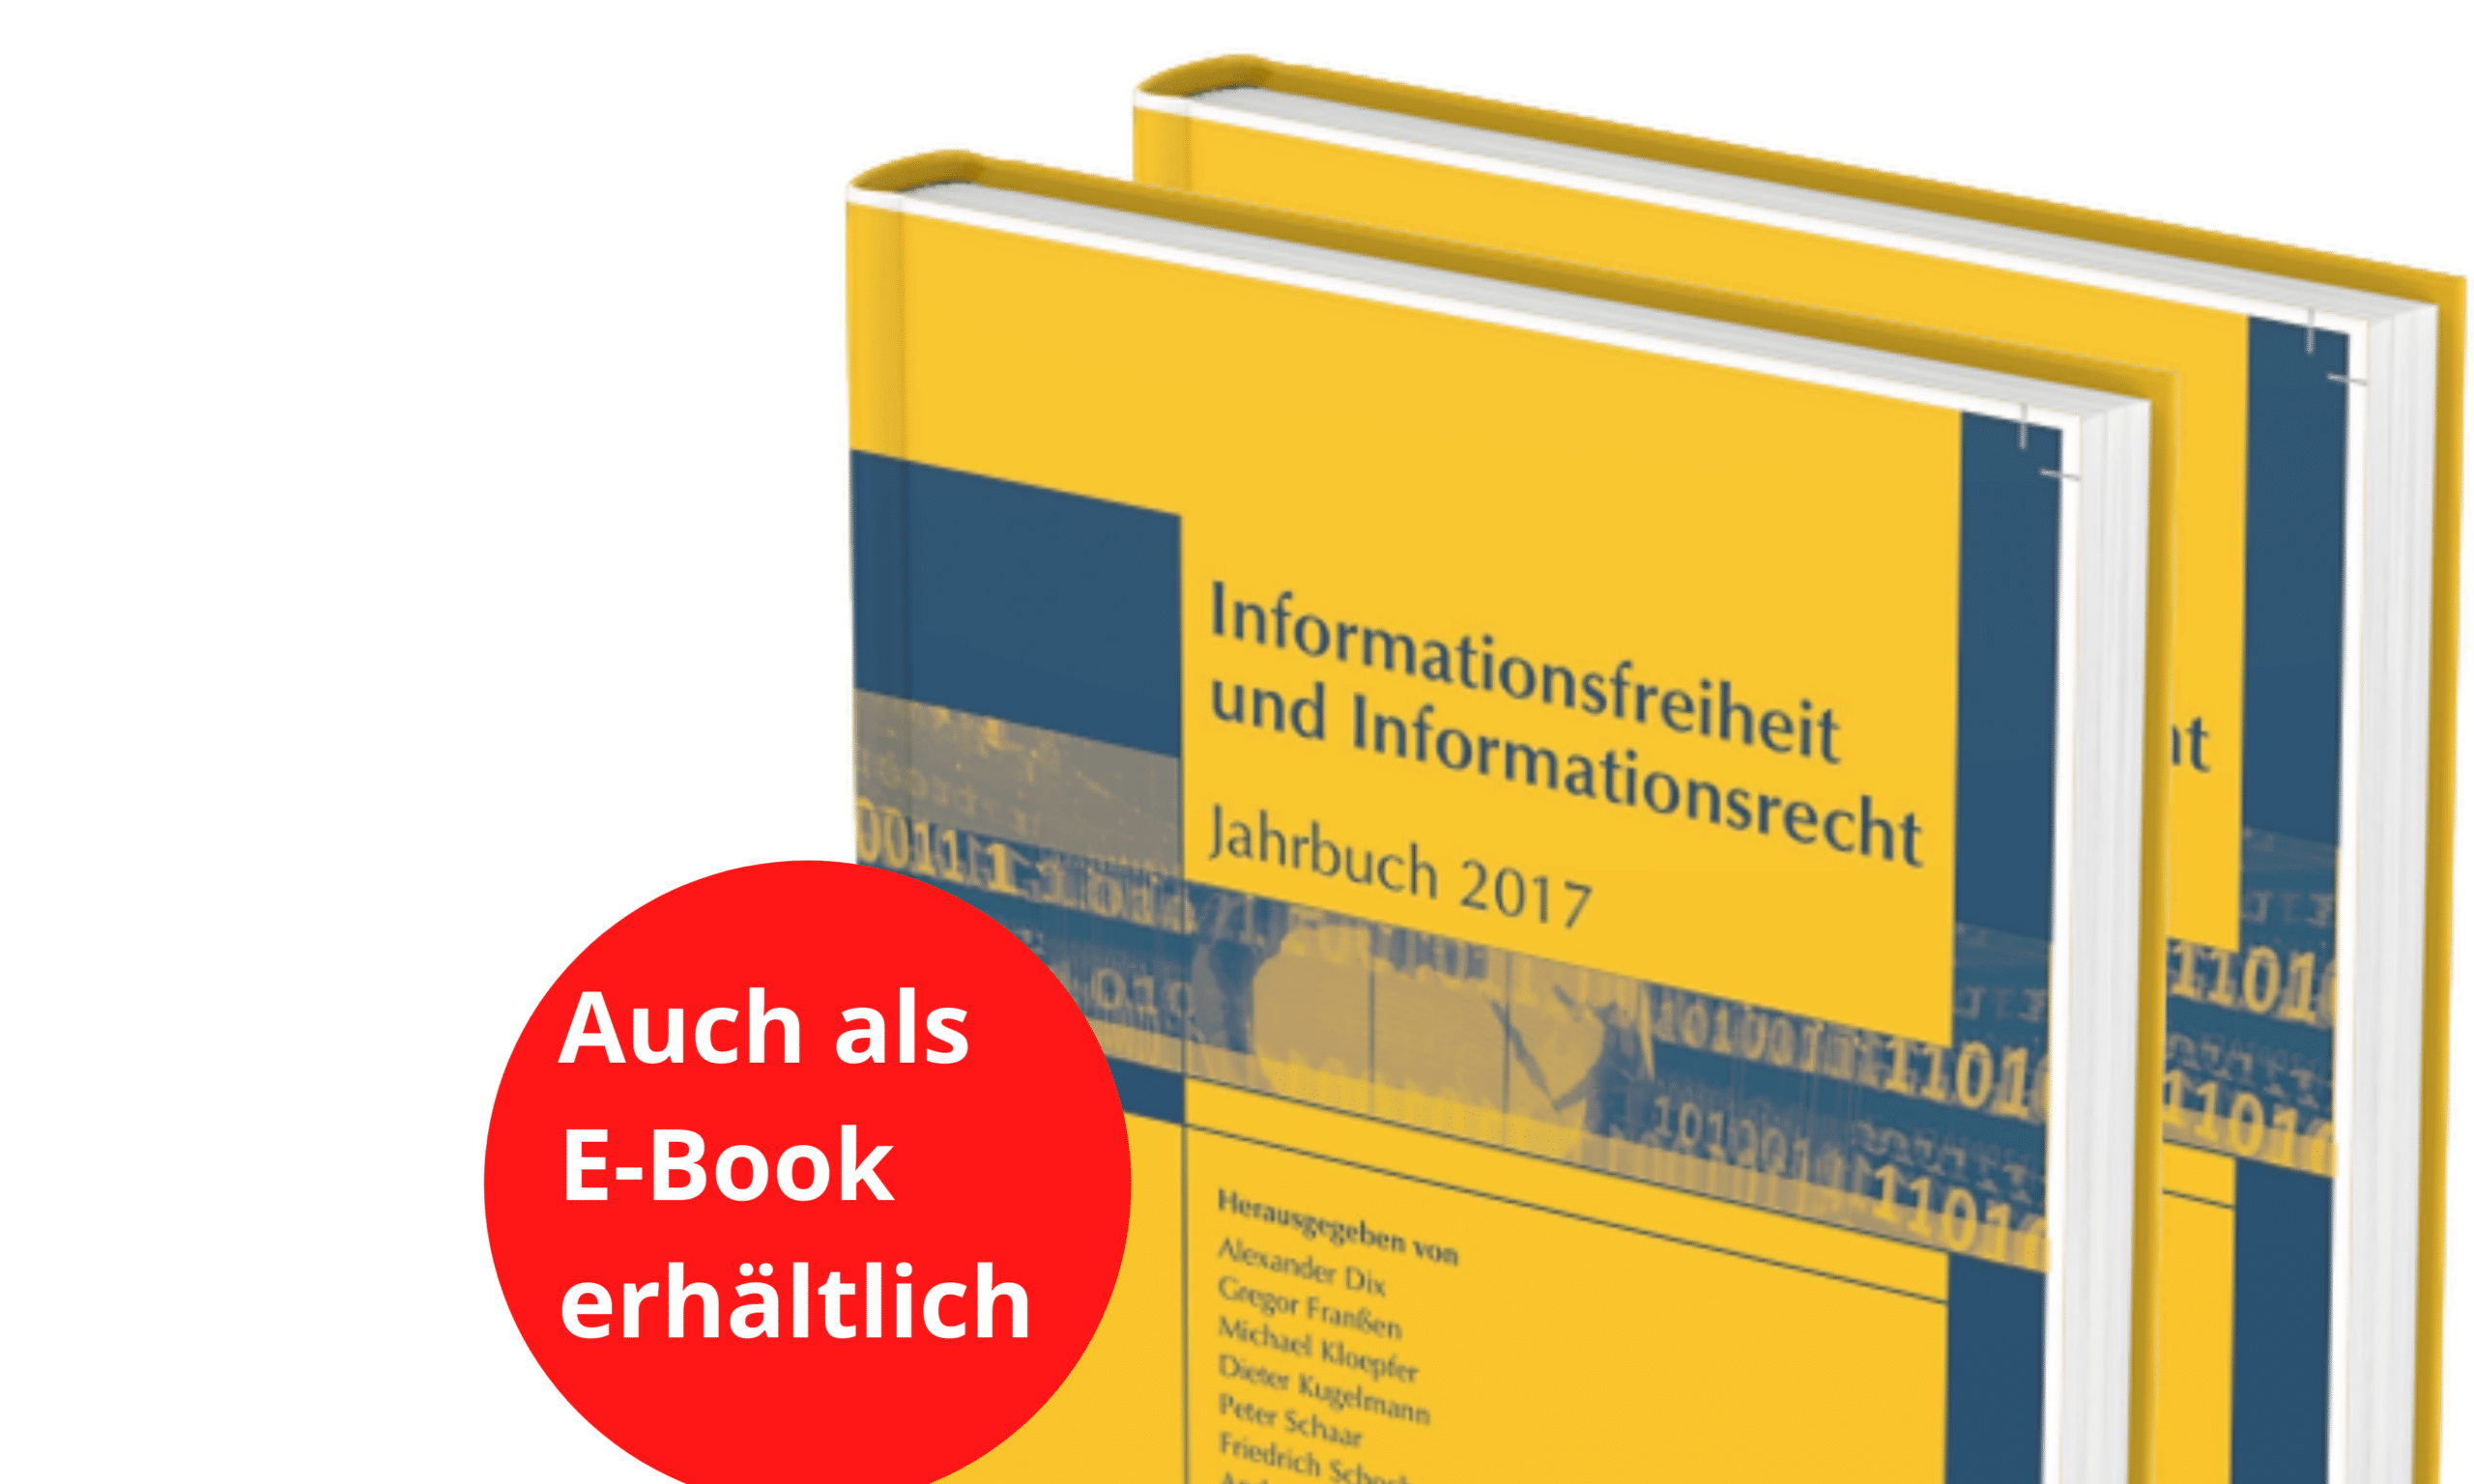 Informationsfreiheit und Informationsrecht - Jahrbuch 2017 - Copy of Copy of Buecher Update 3